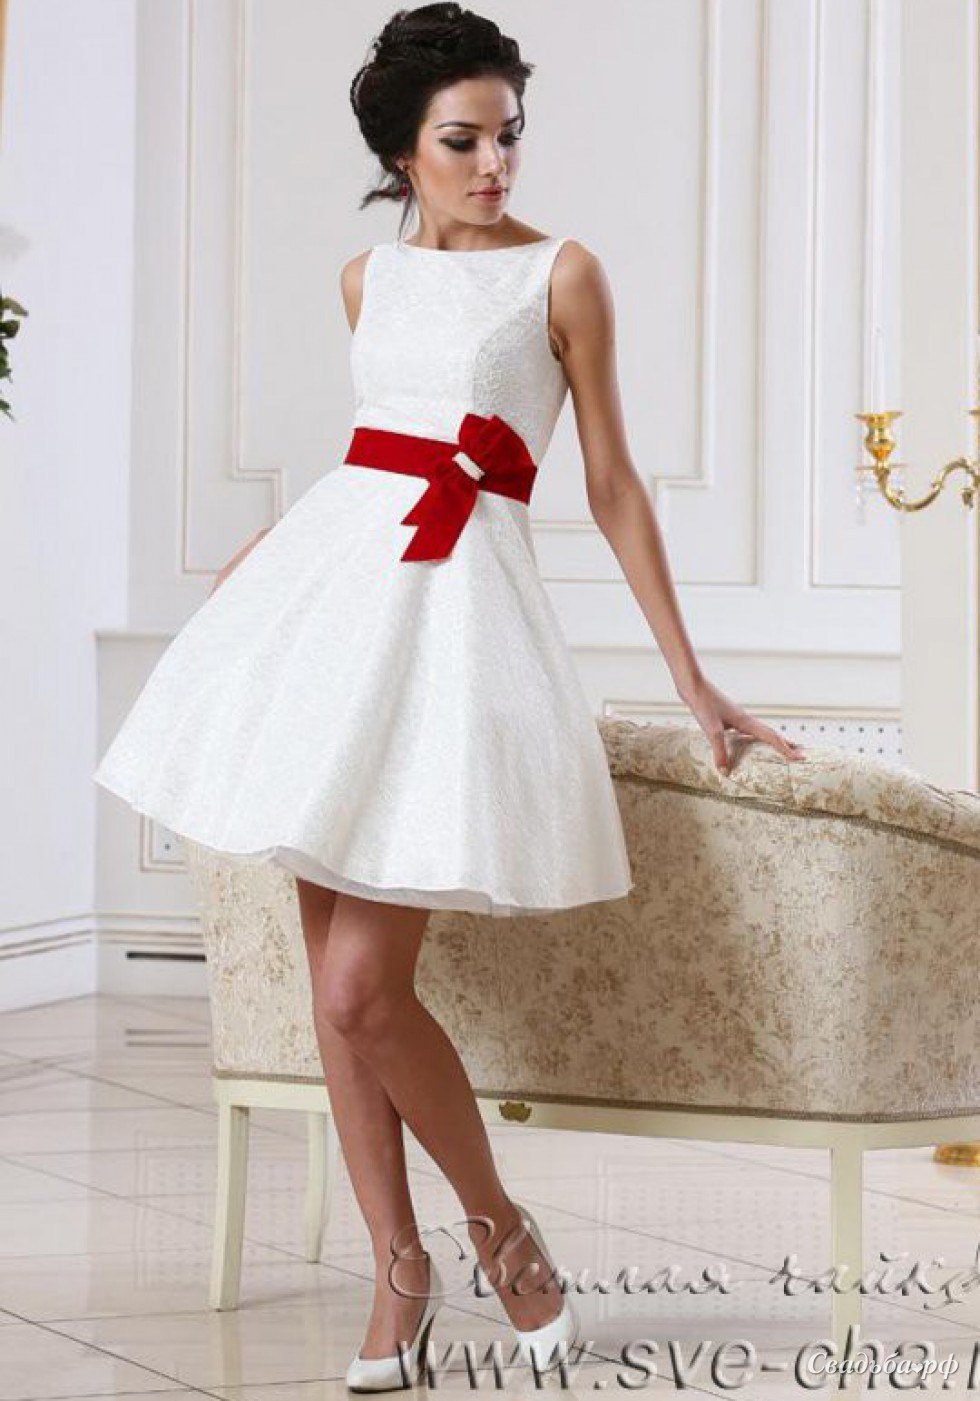 Платье с красным поясом. Короткое свадедбноеплатье. Короткое свадебное платье. Свадебное платье алроткле. Платье вечернее короткое.